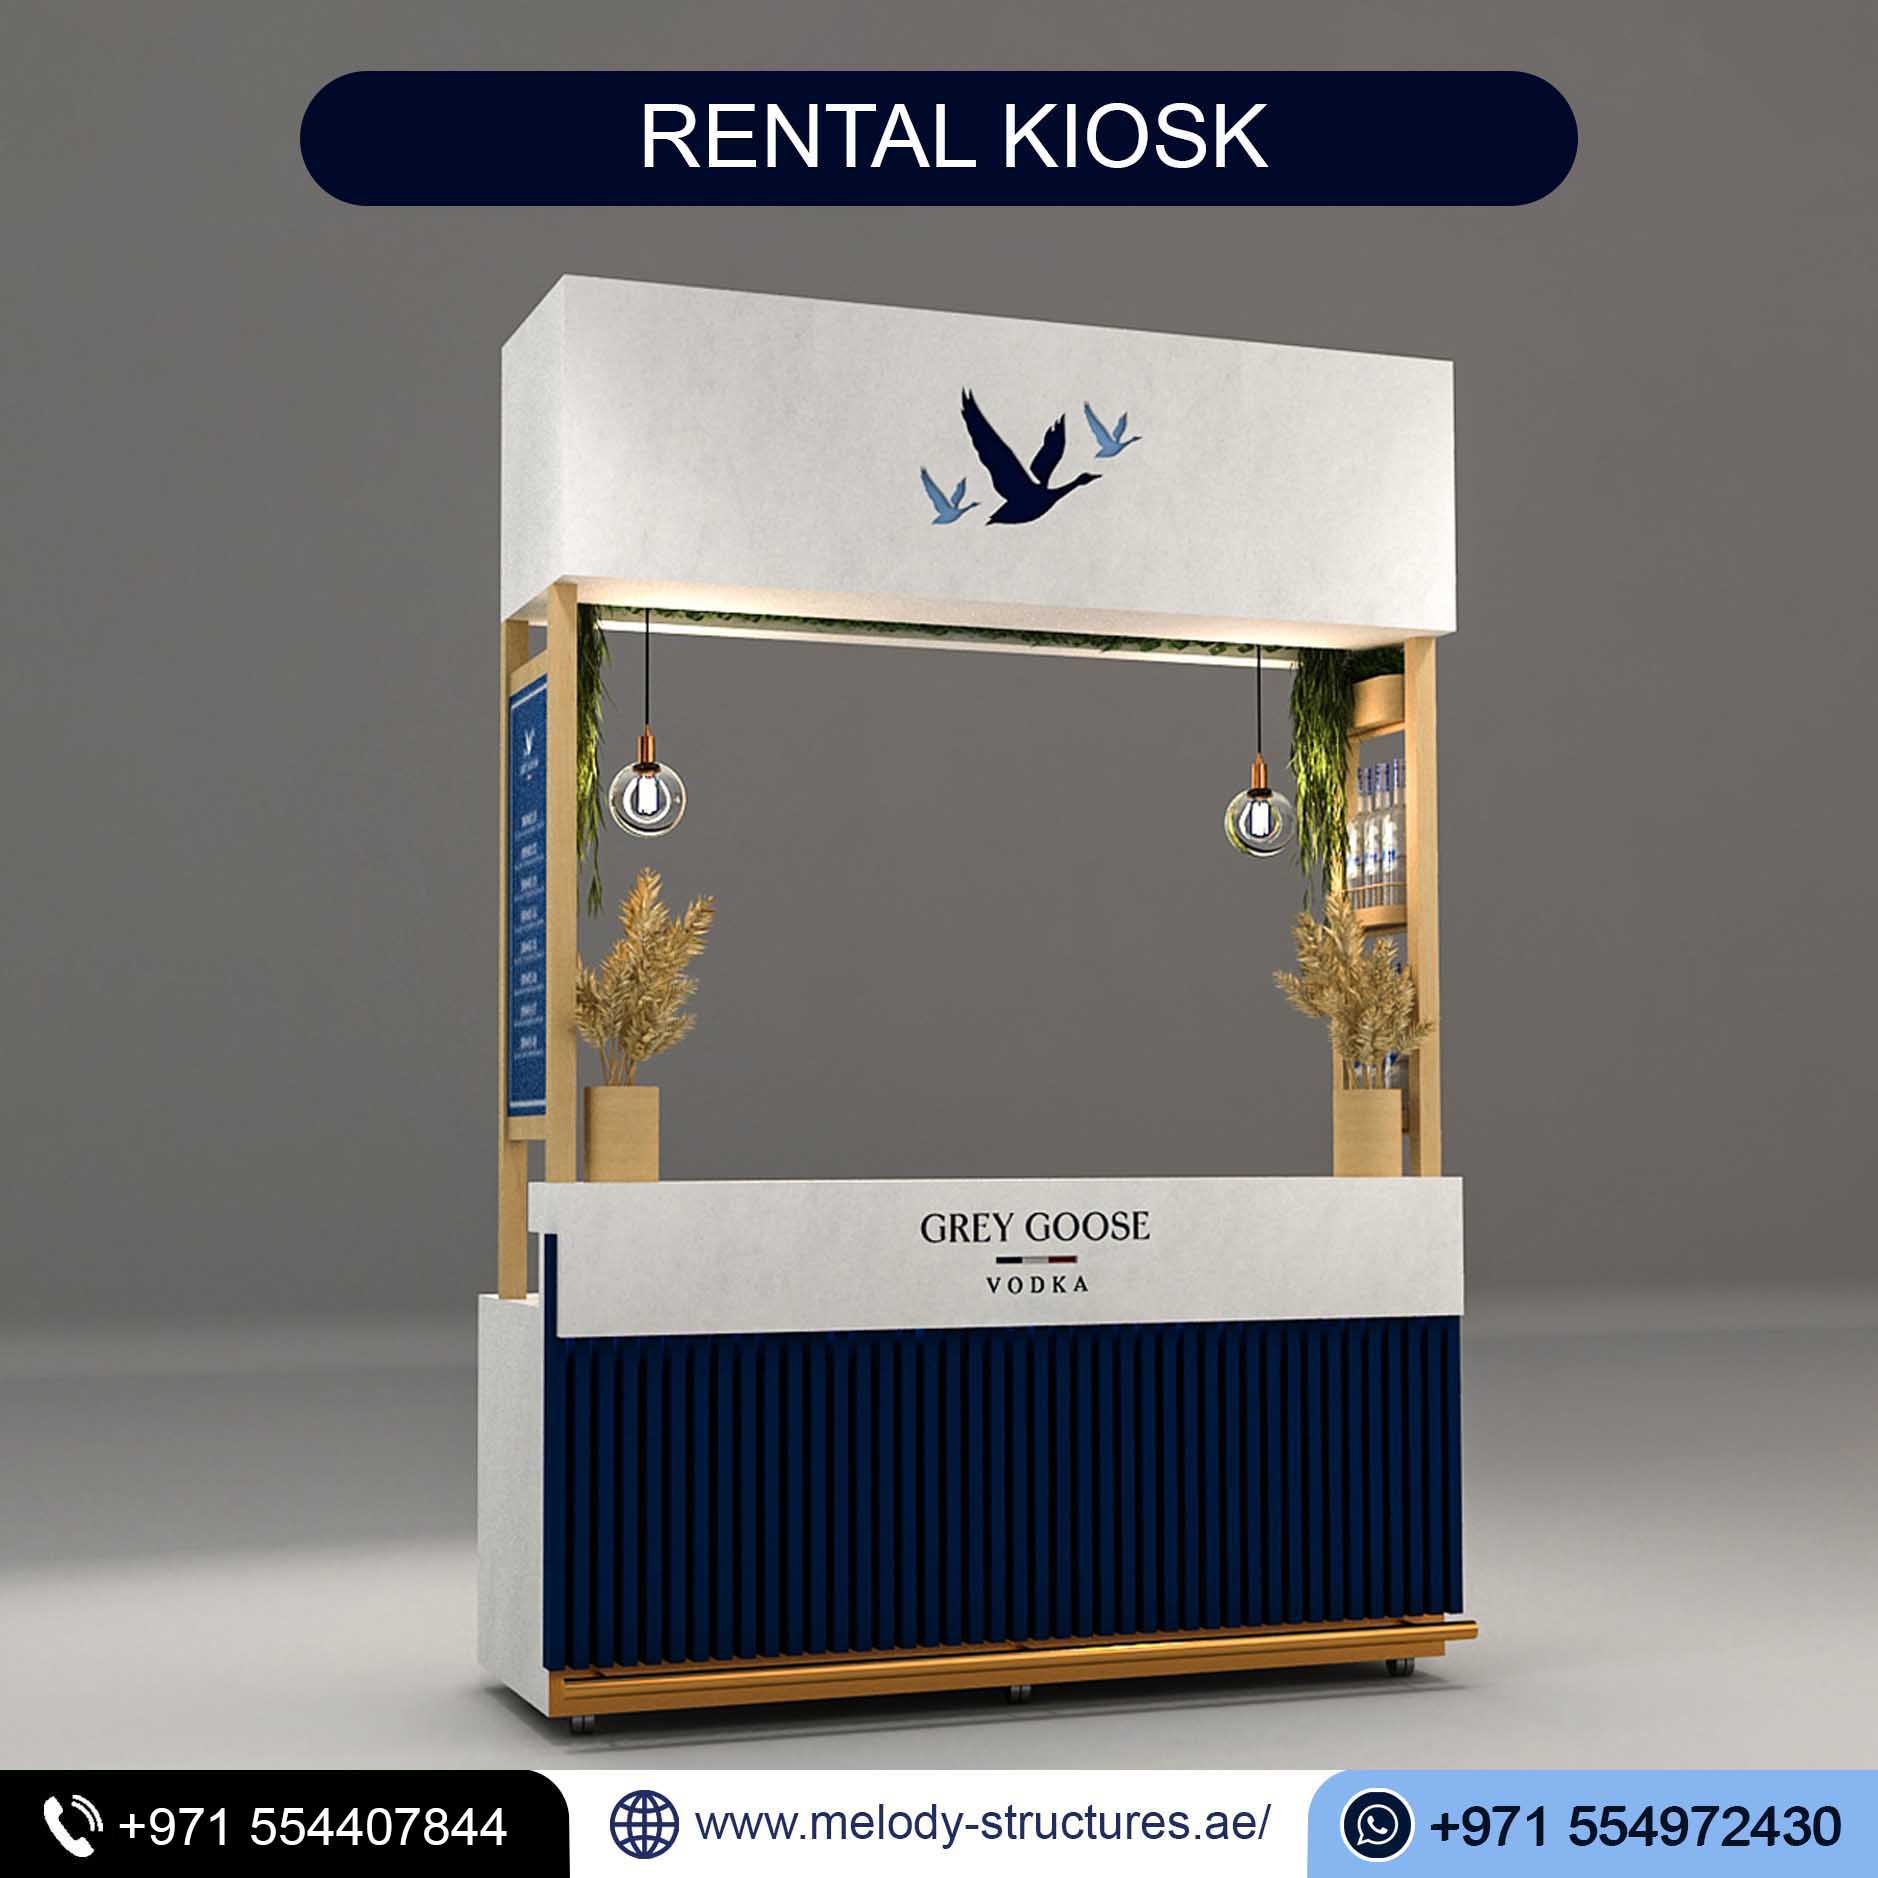 Rental Kiosk Company in UAE, Rental Kiosk For Events (4).jpg